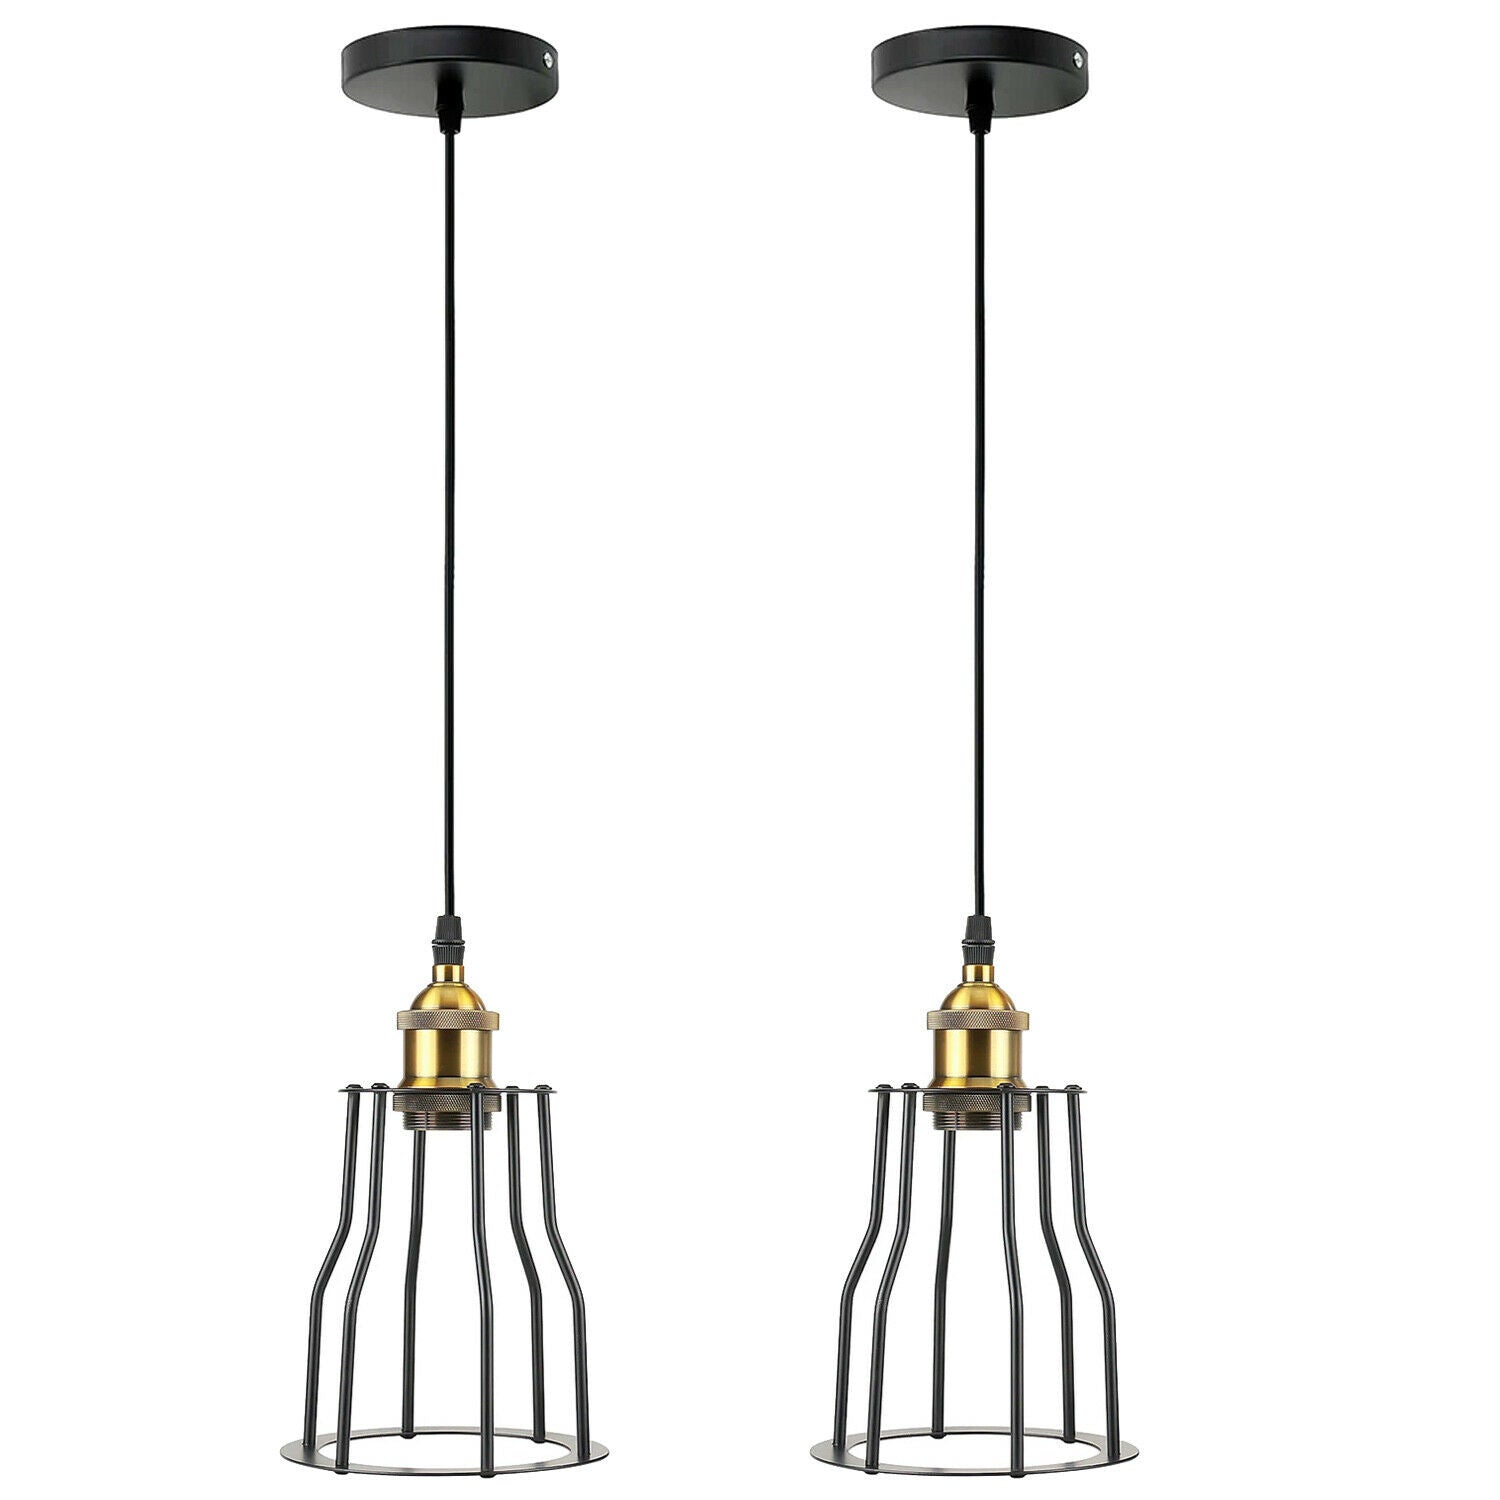 2 Pack Vintage Industrial Modern Retro Loft Cage Ceiling Lamp Cage Pendant Lights~3562 - LEDSone UK Ltd